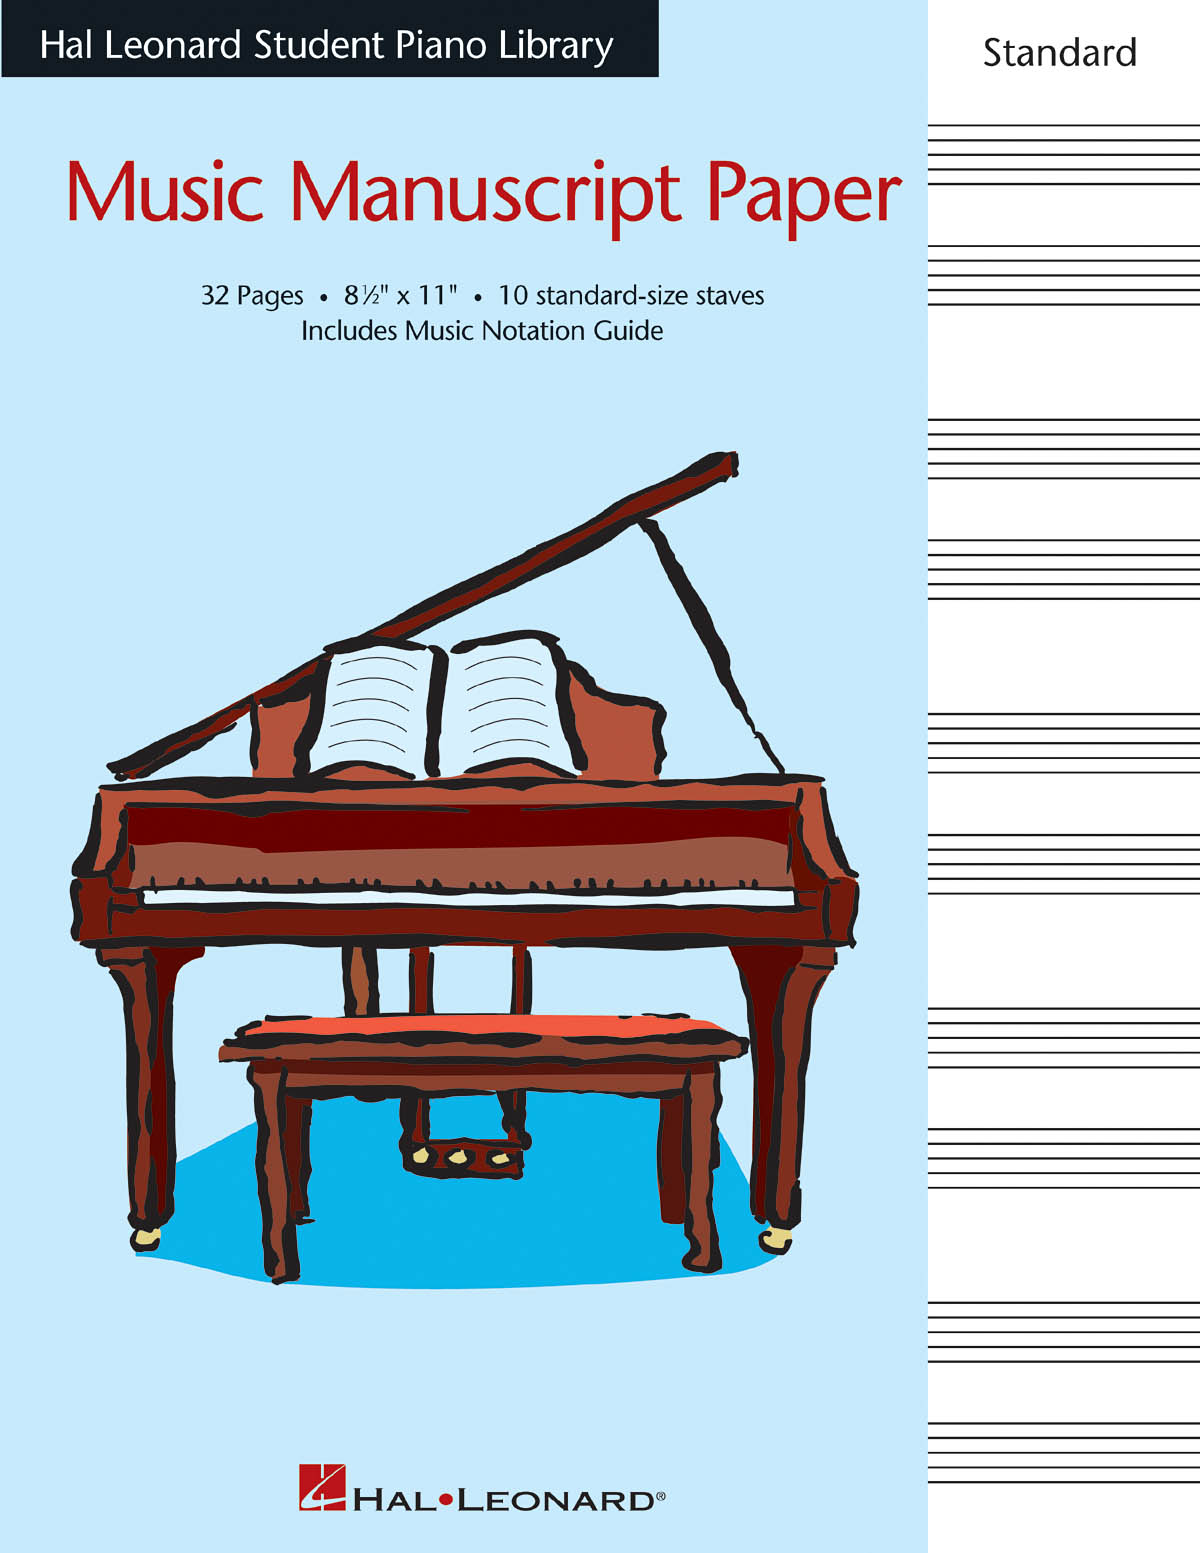 Hal Leonard Student Piano Library: Piano: Single Sheet